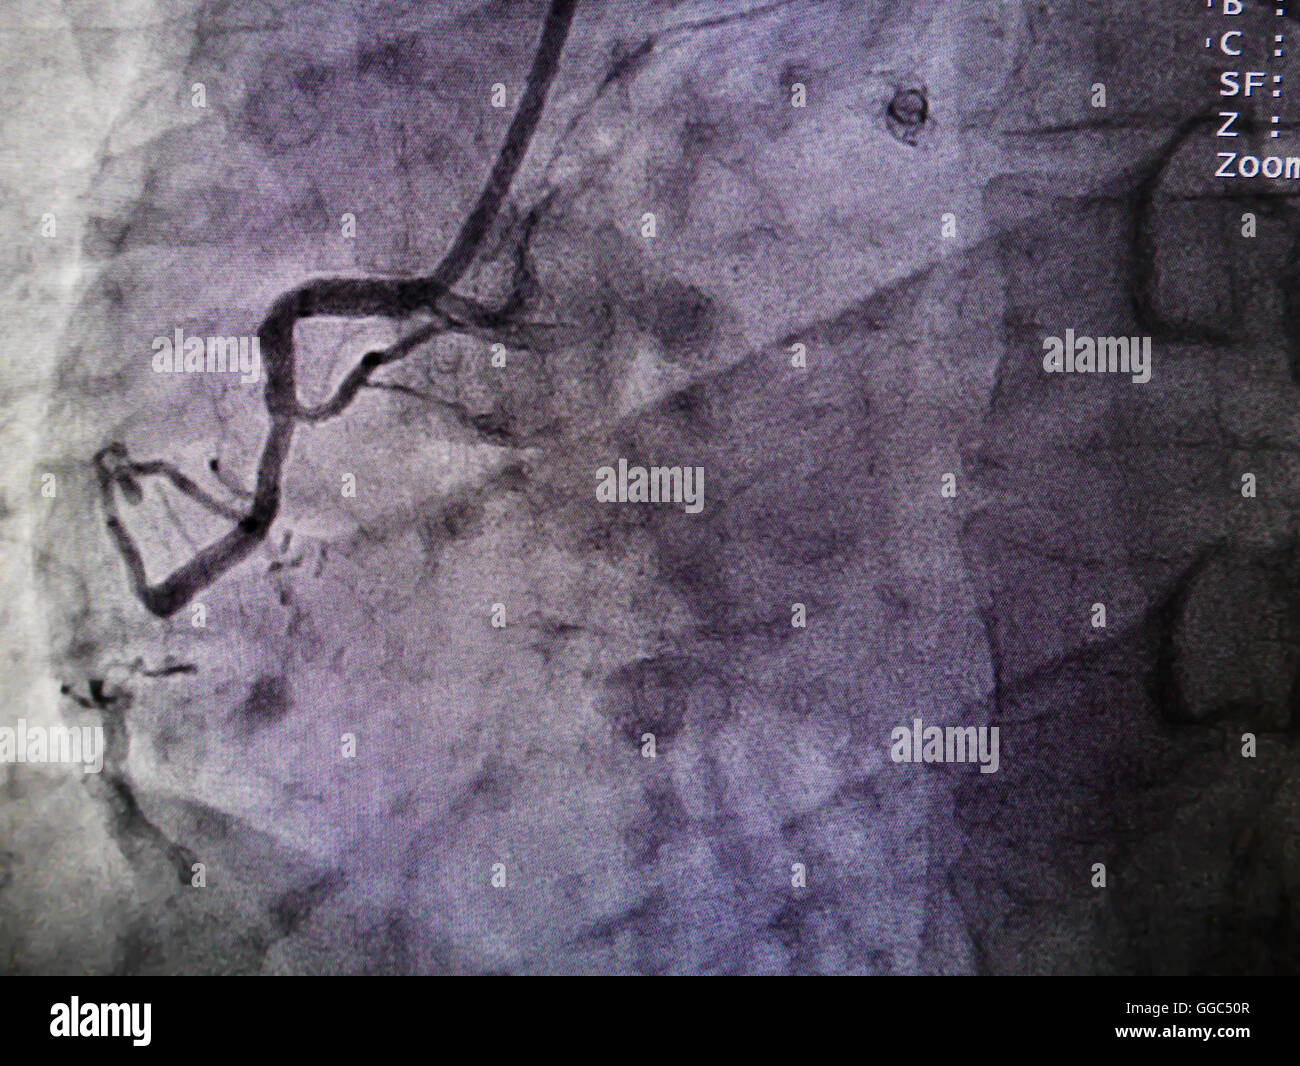 STEMI at right coronary artery from x-ray in cardiac catheterization laboratory Stock Photo